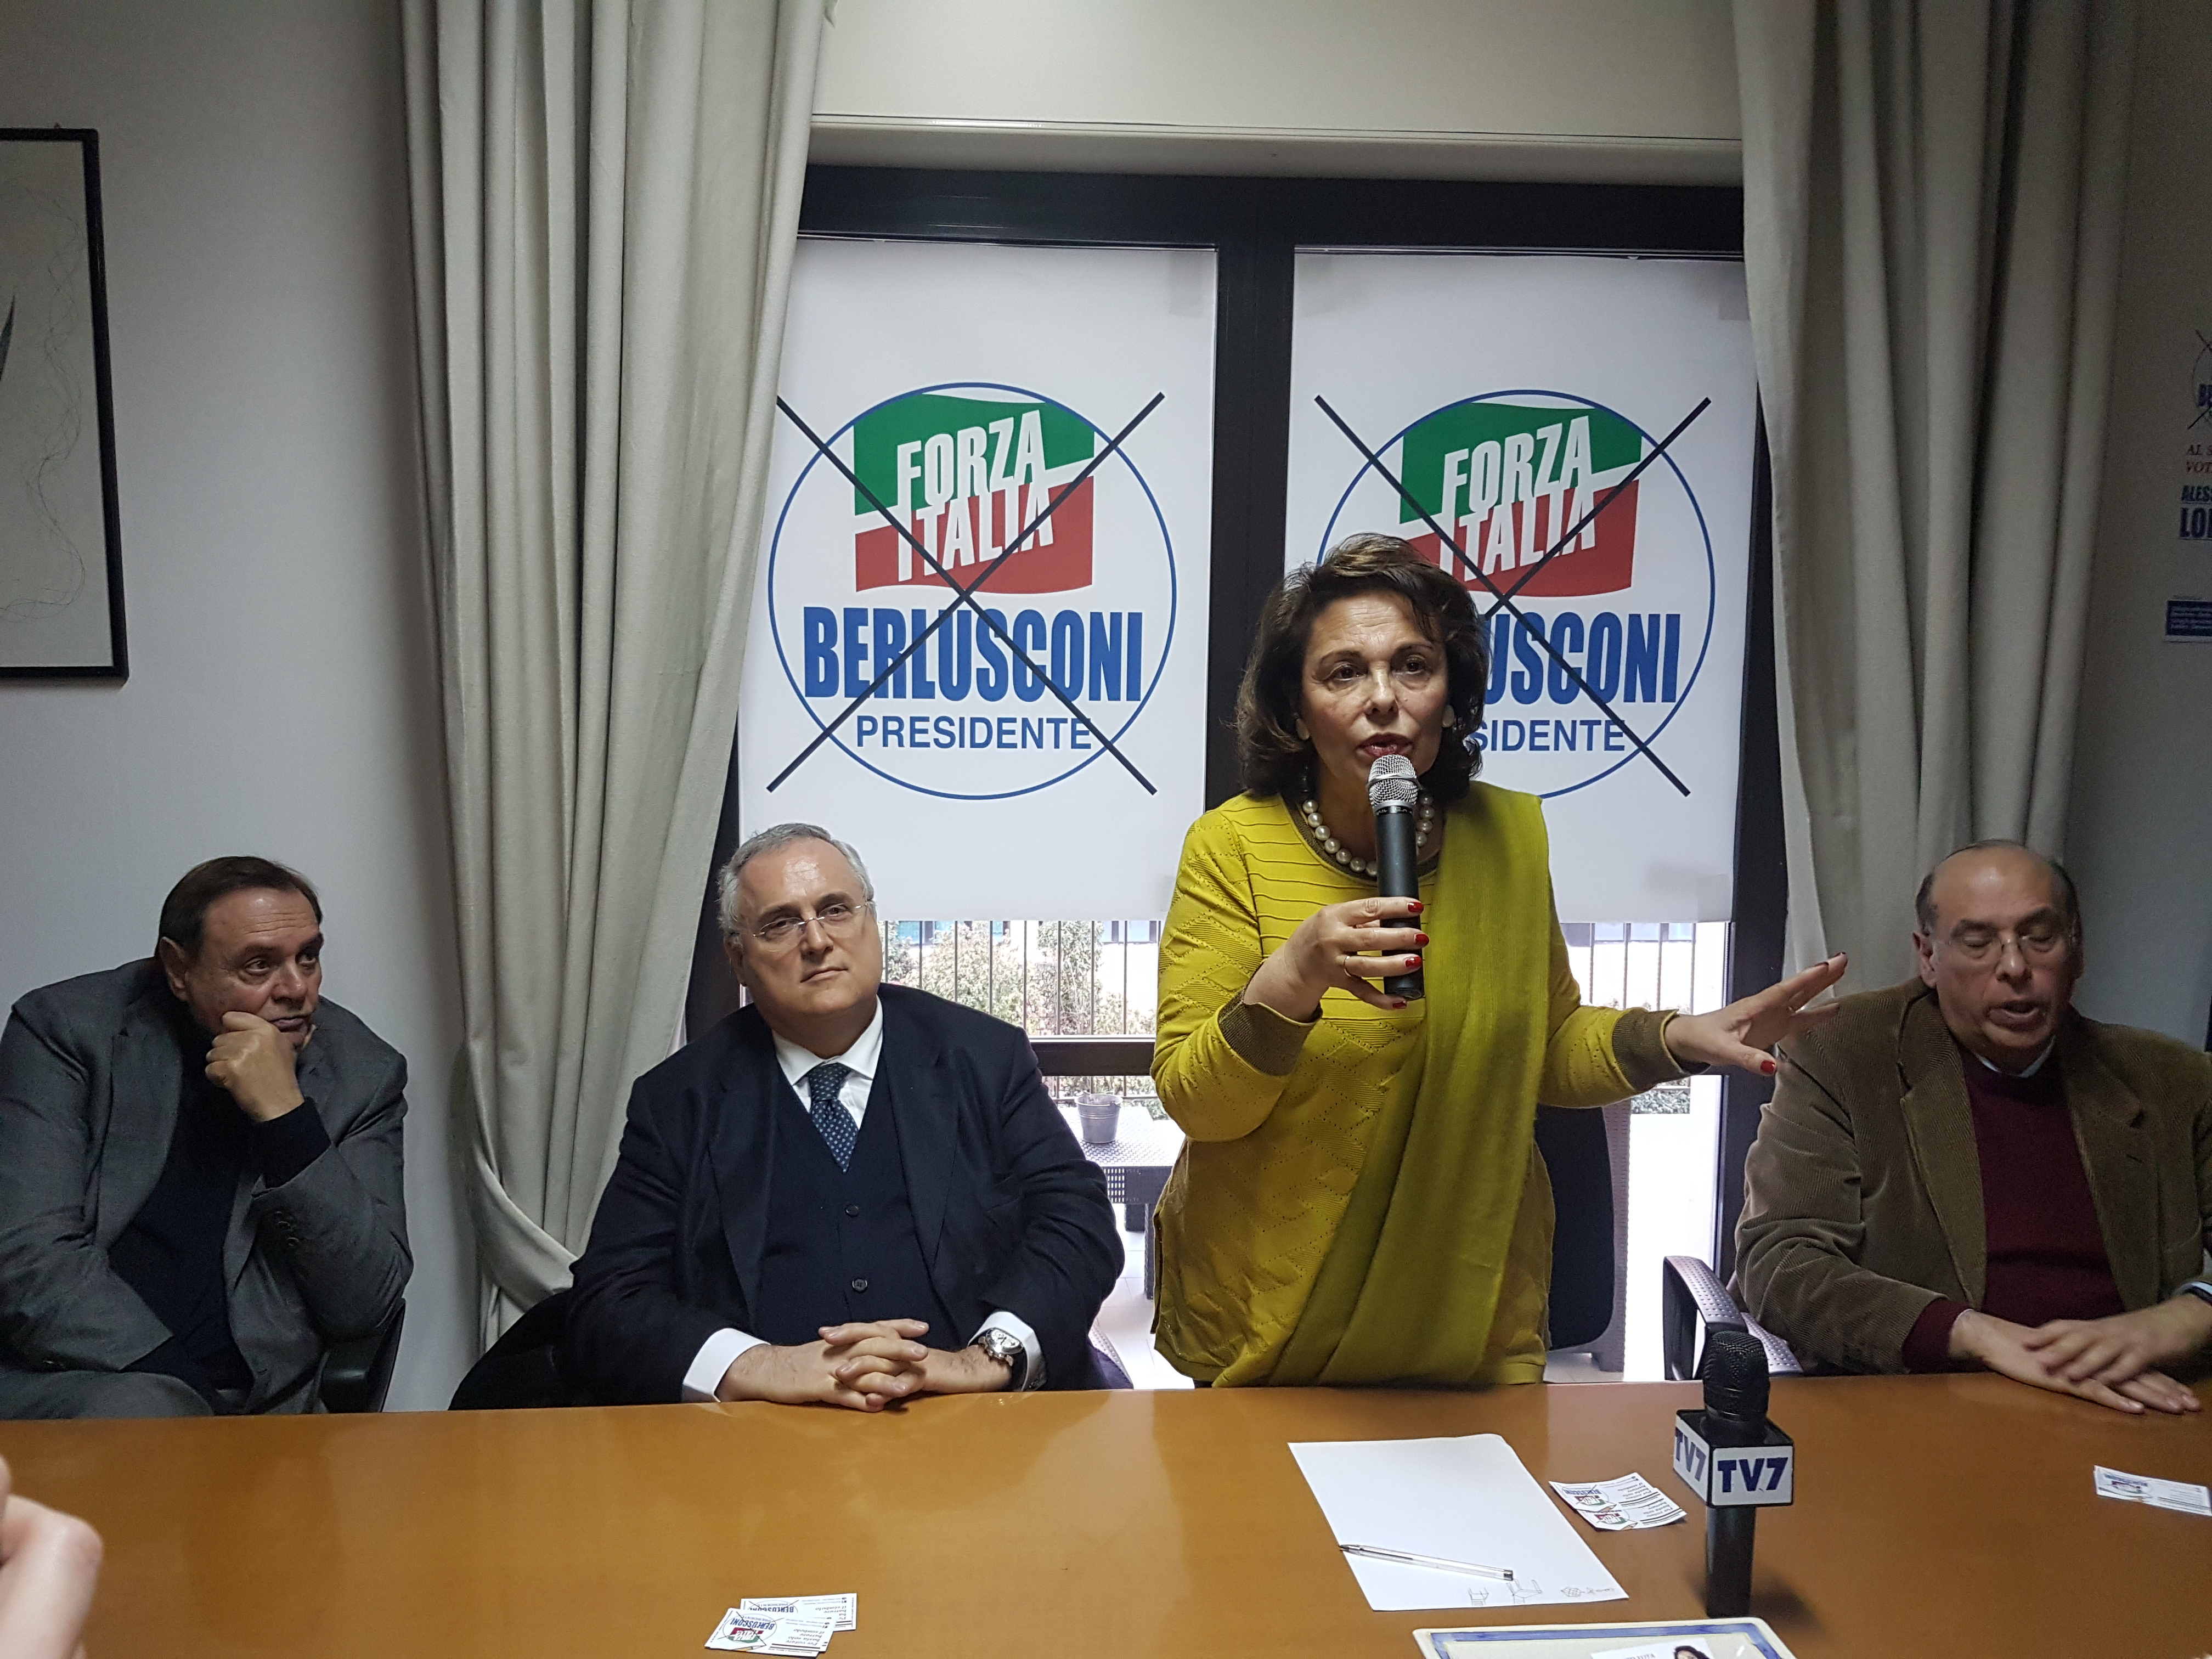 Elezioni: è festa in casa Mastella, Sandra Lonardo eletta in FI. Mastella: “grazie a chi l’ha votata”